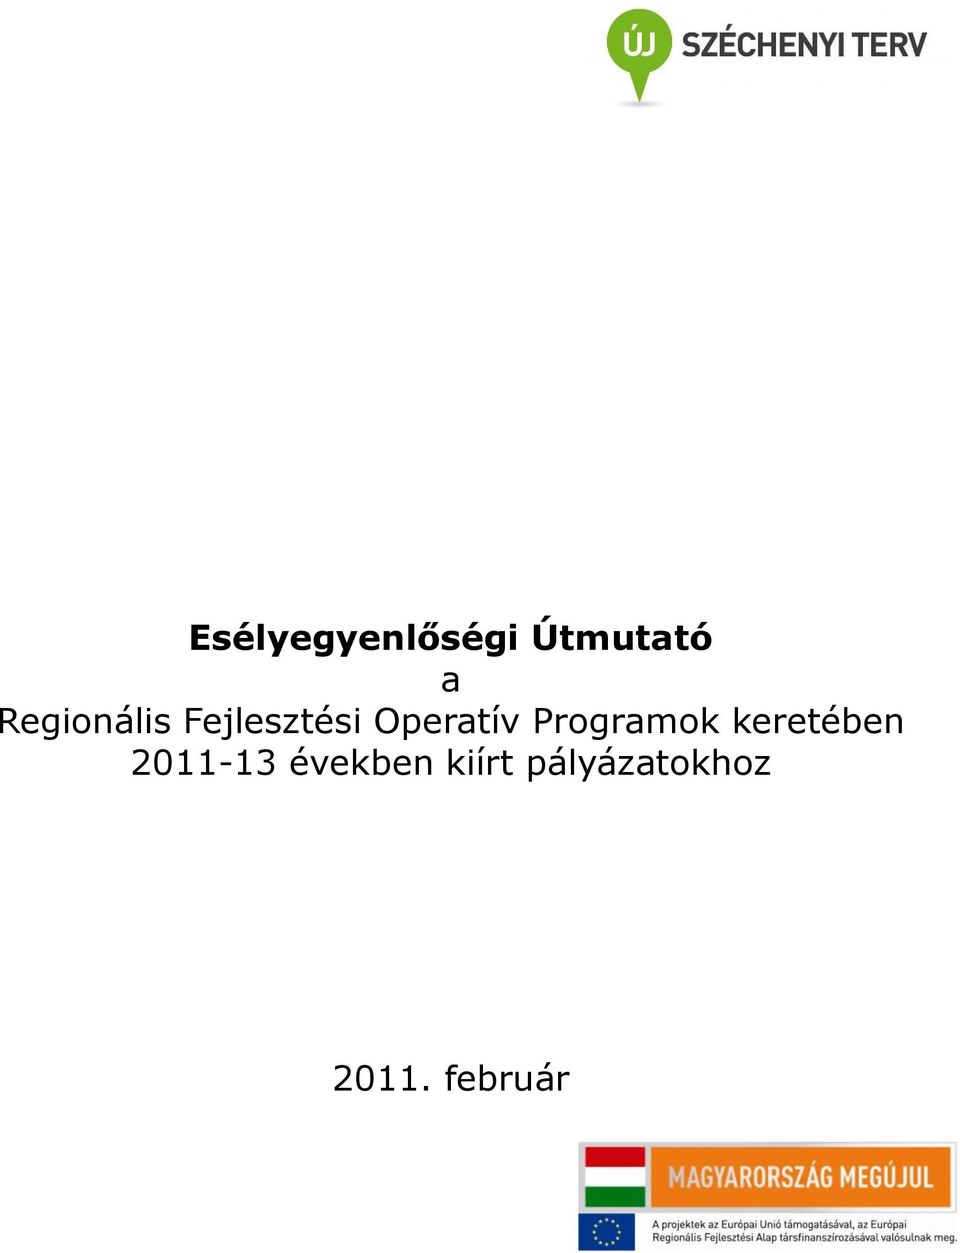 Programok keretében 2011-13